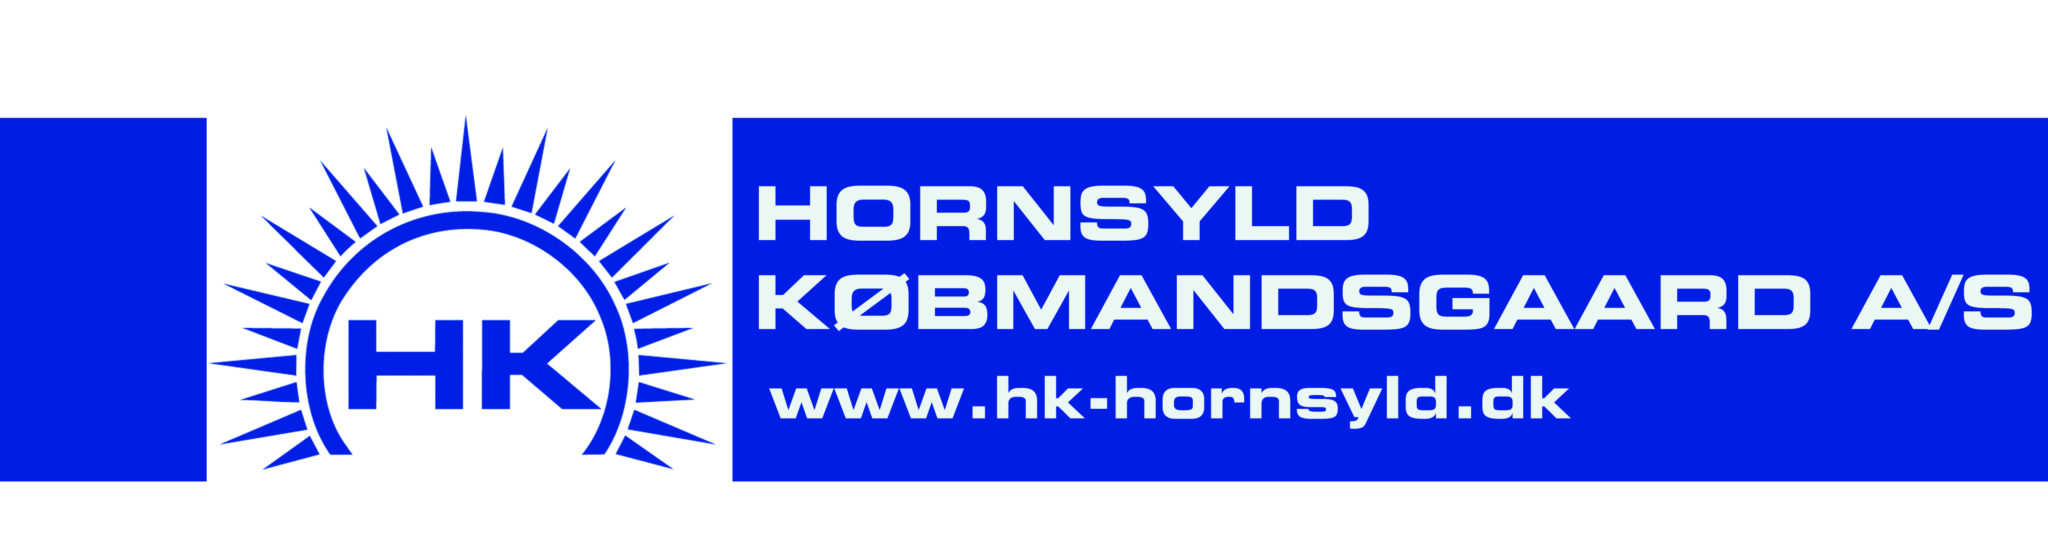 logo Hornsyld Købmandsgaard med www